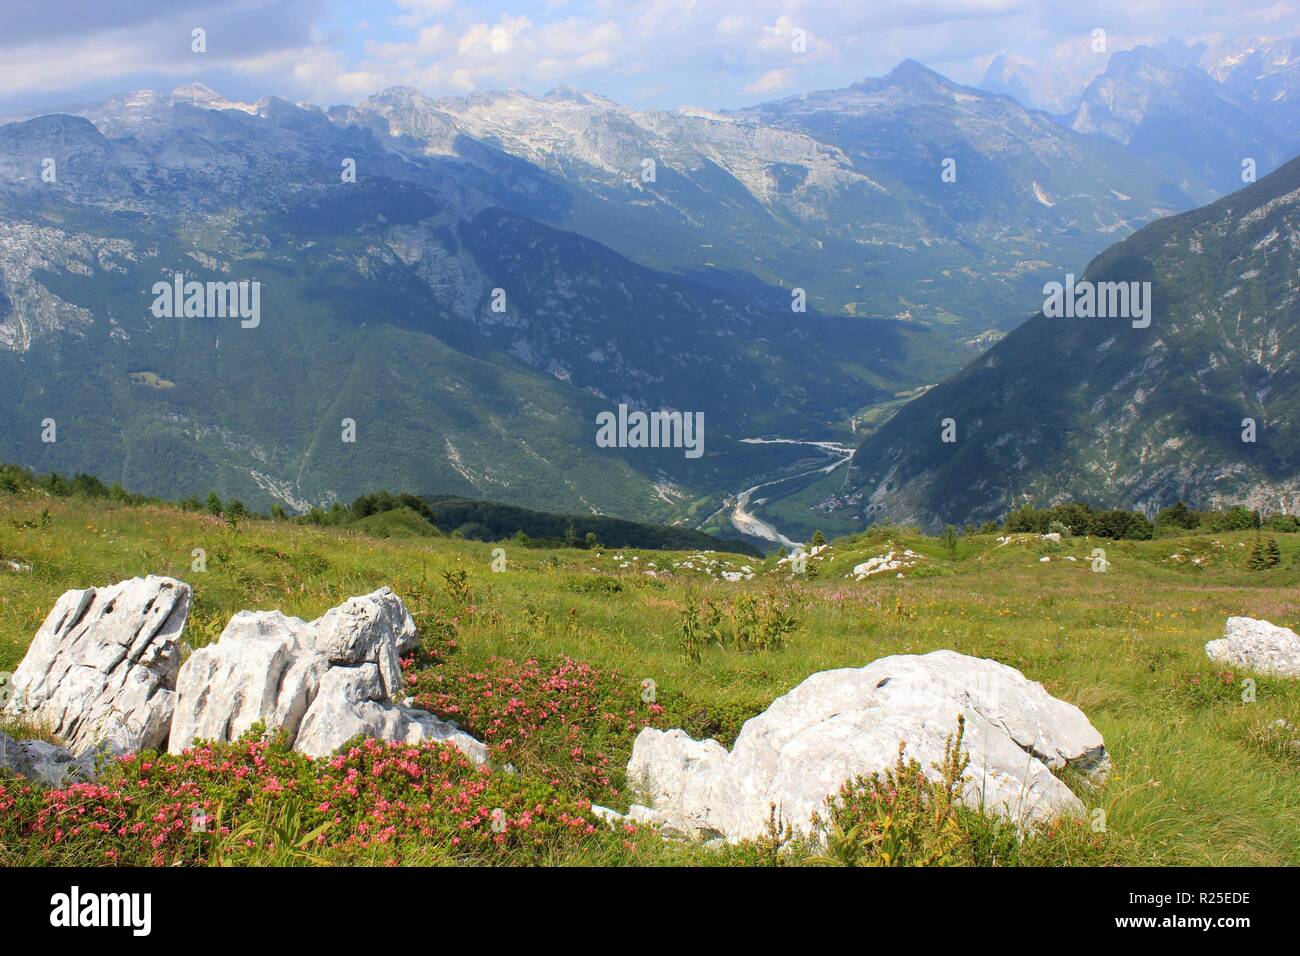 Paysage alpin avec de grandes fleurs de laurier (rhododendron), vallée de Soca et sentier de randonnée Juliana en arrière-plan, mont Kobariski Stol, Slovénie, UE Banque D'Images